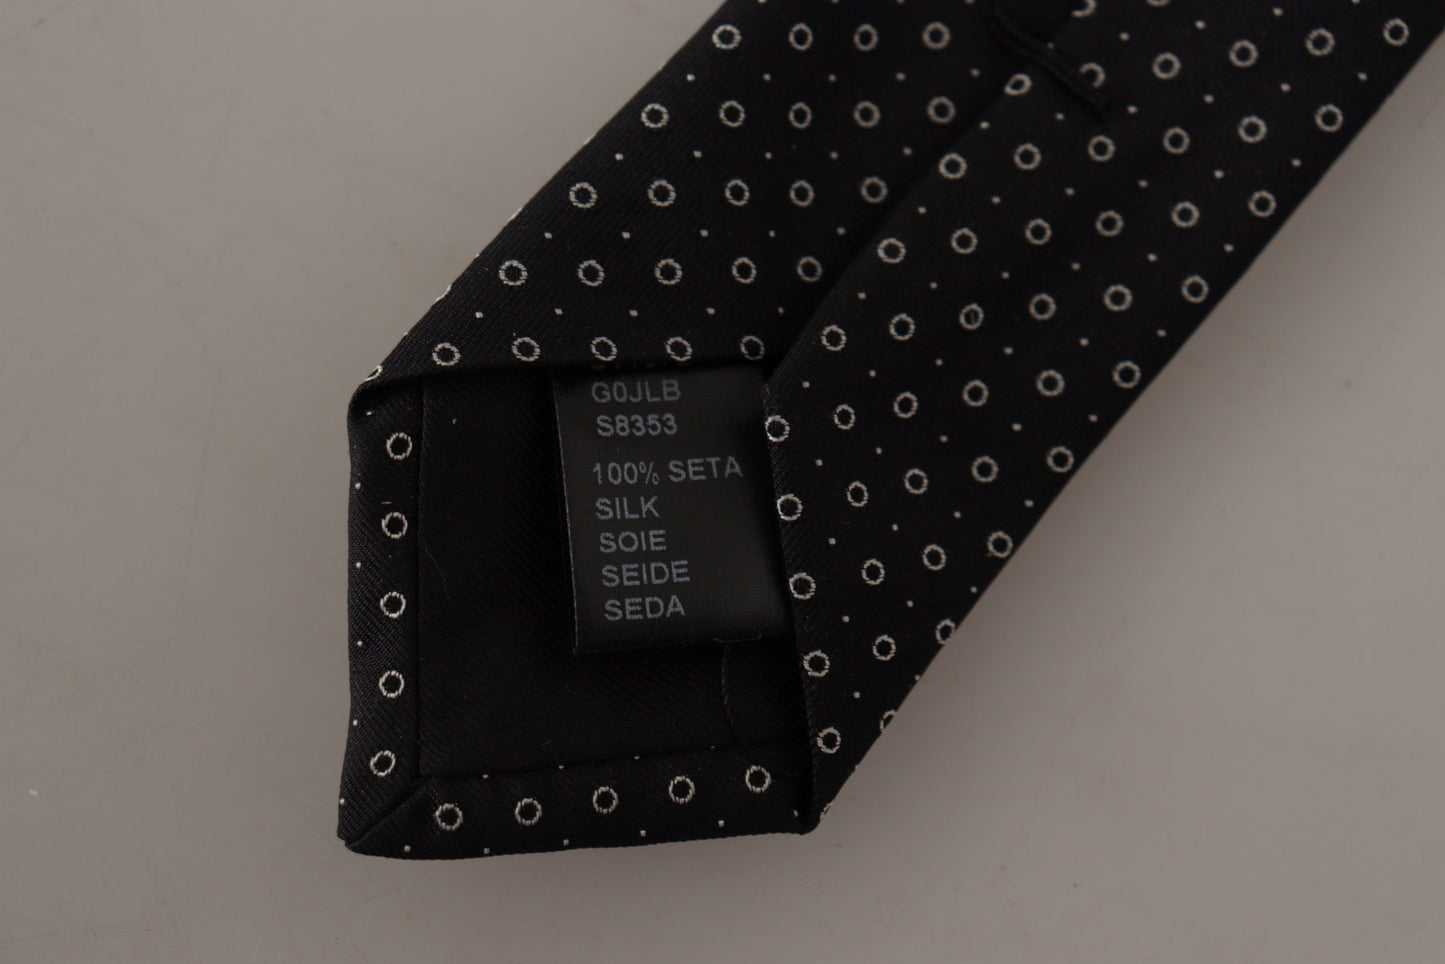 Dolce & Gabbana White Black Polka Dots Necktie Accessory 100% Silk Tie